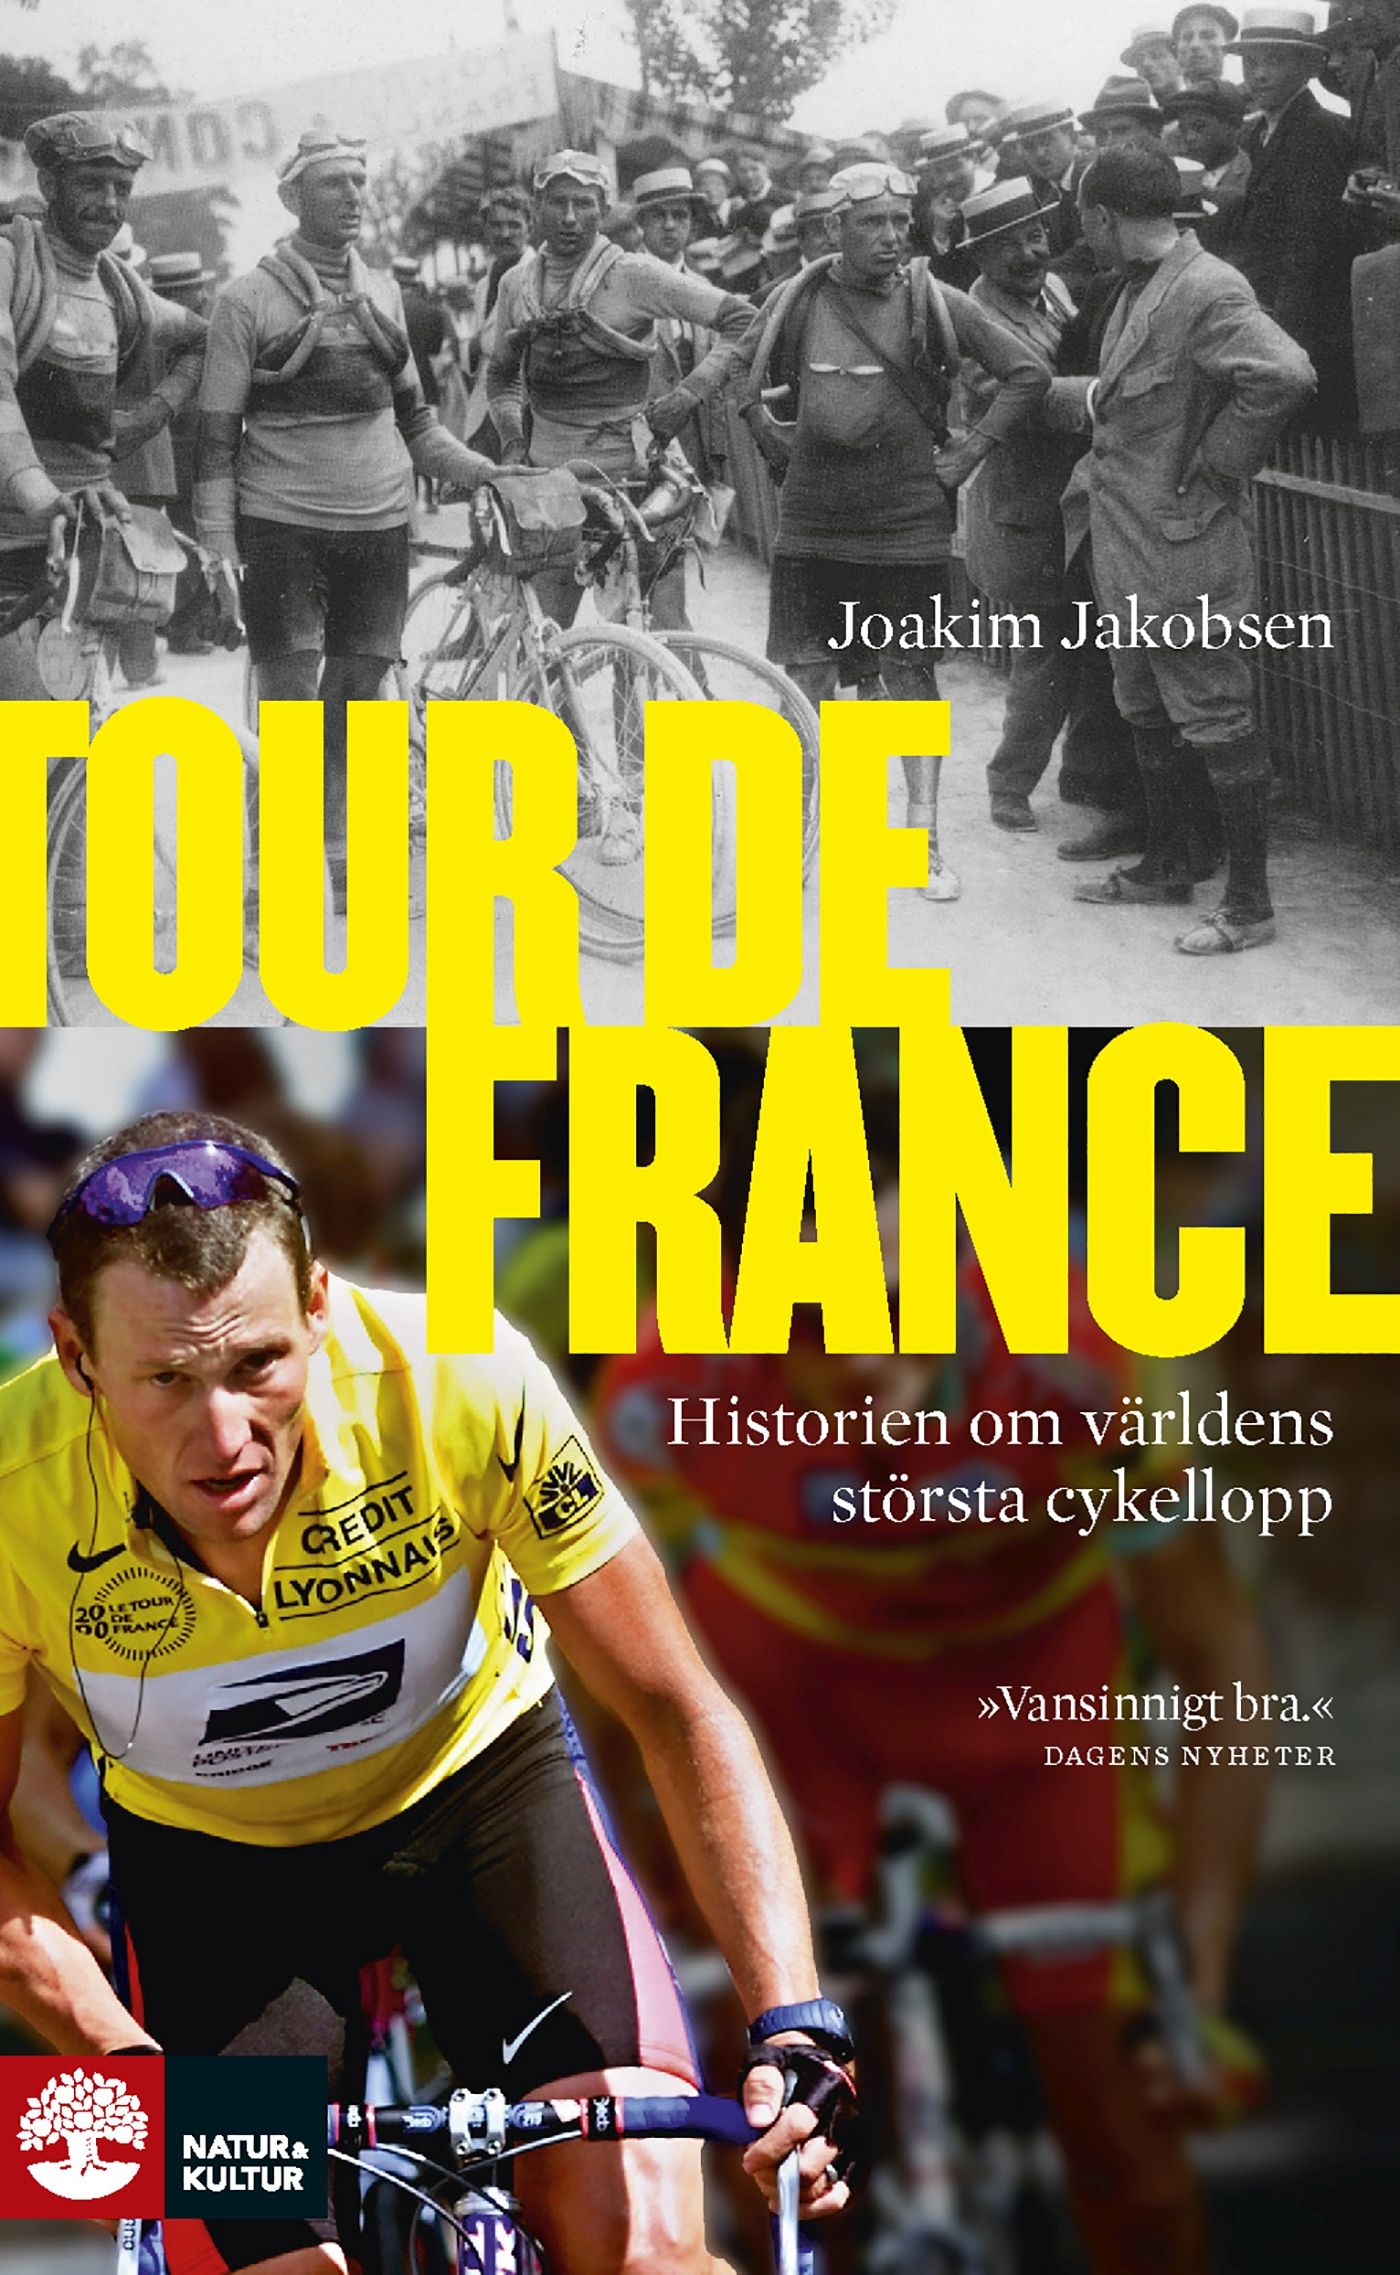 Tour de France, e-bog af Joakim Jakobsen